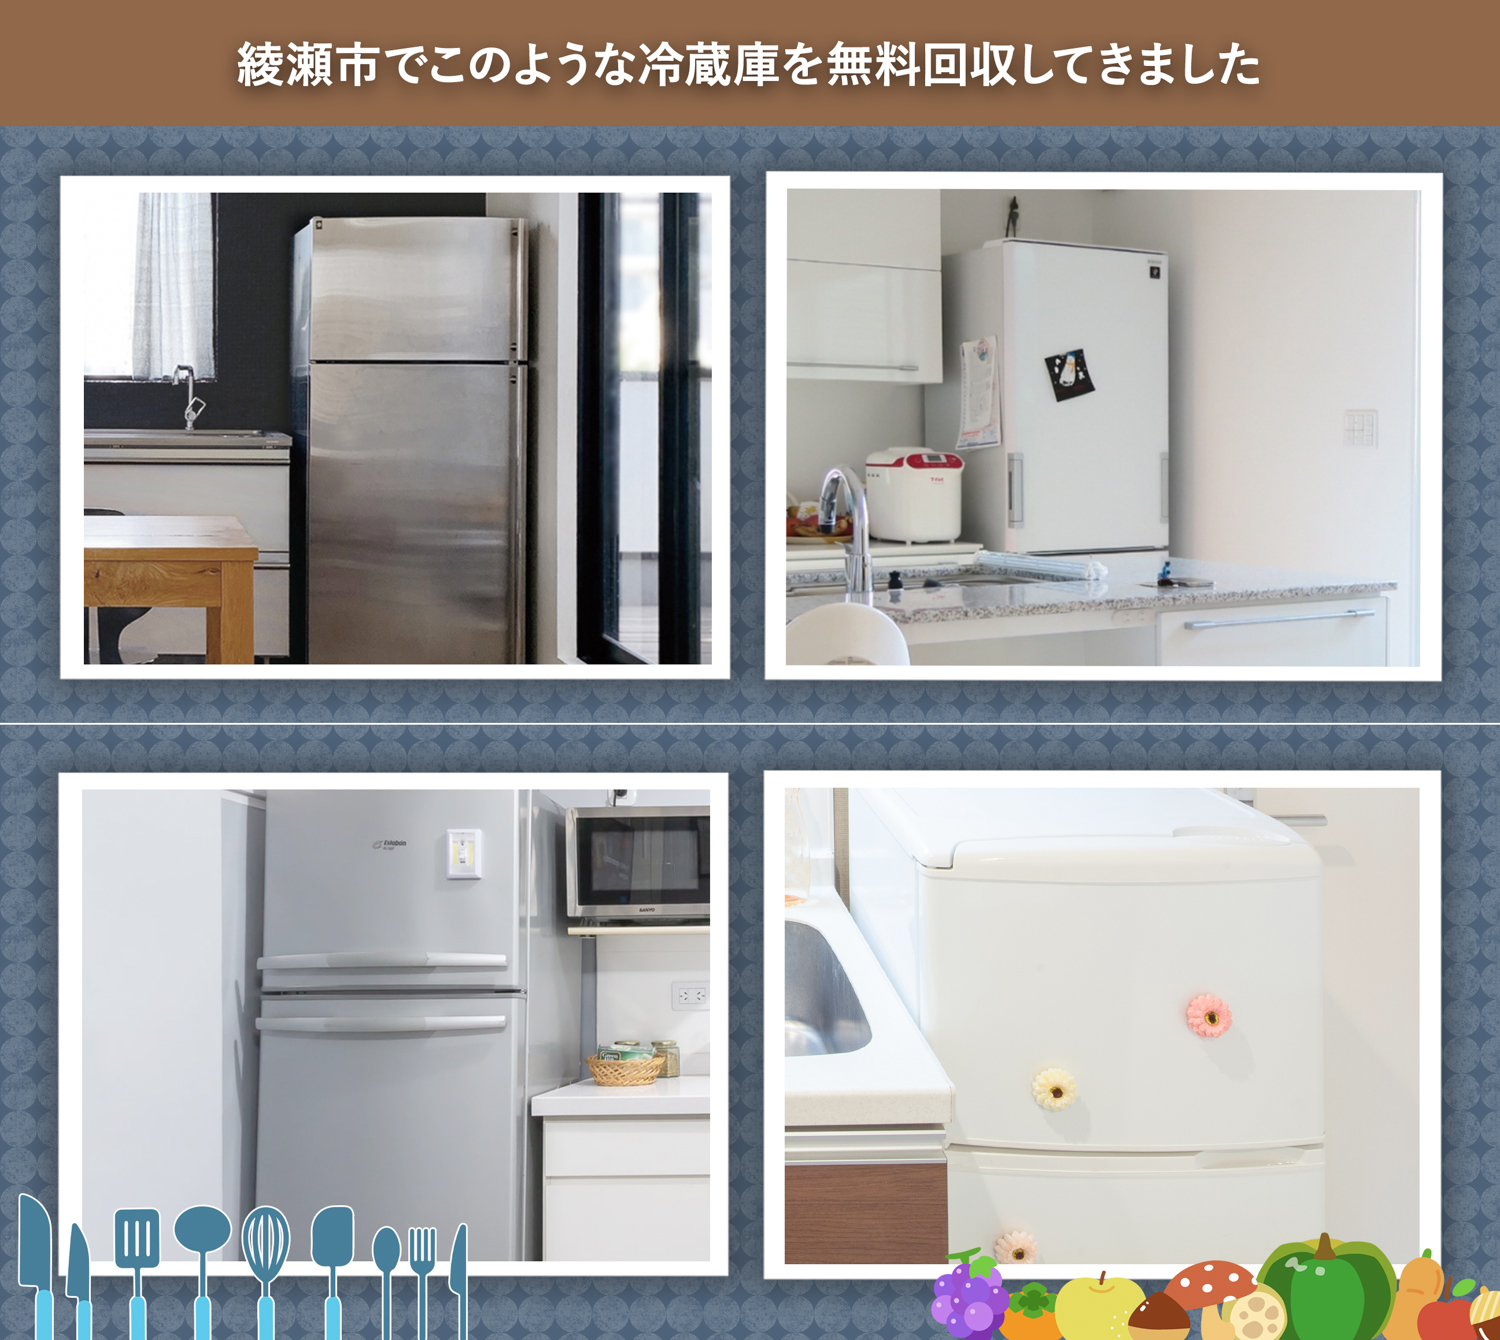 綾瀬市でこのような冷蔵庫を無料回収してきました。